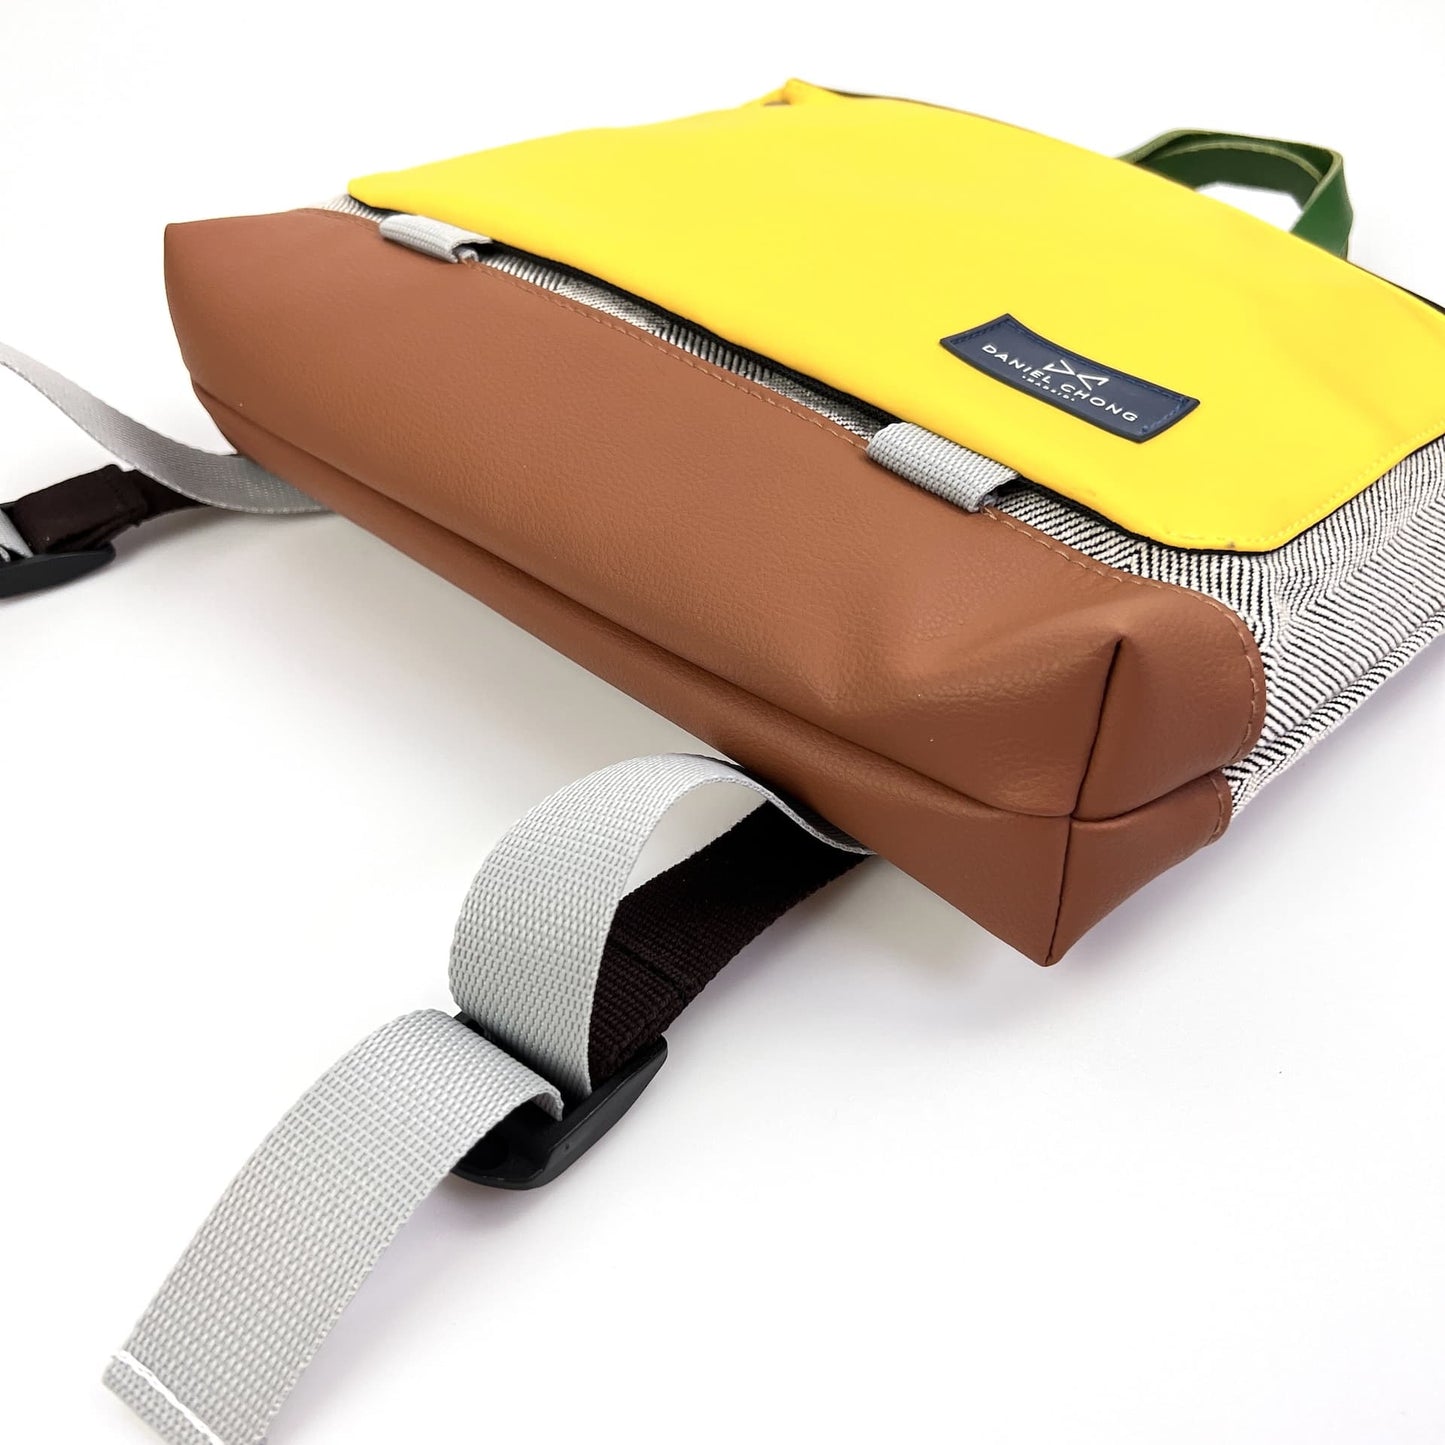 Mochila Book Holder Cuadrada en loneta con bolsillo exterior amarillo y base marrón